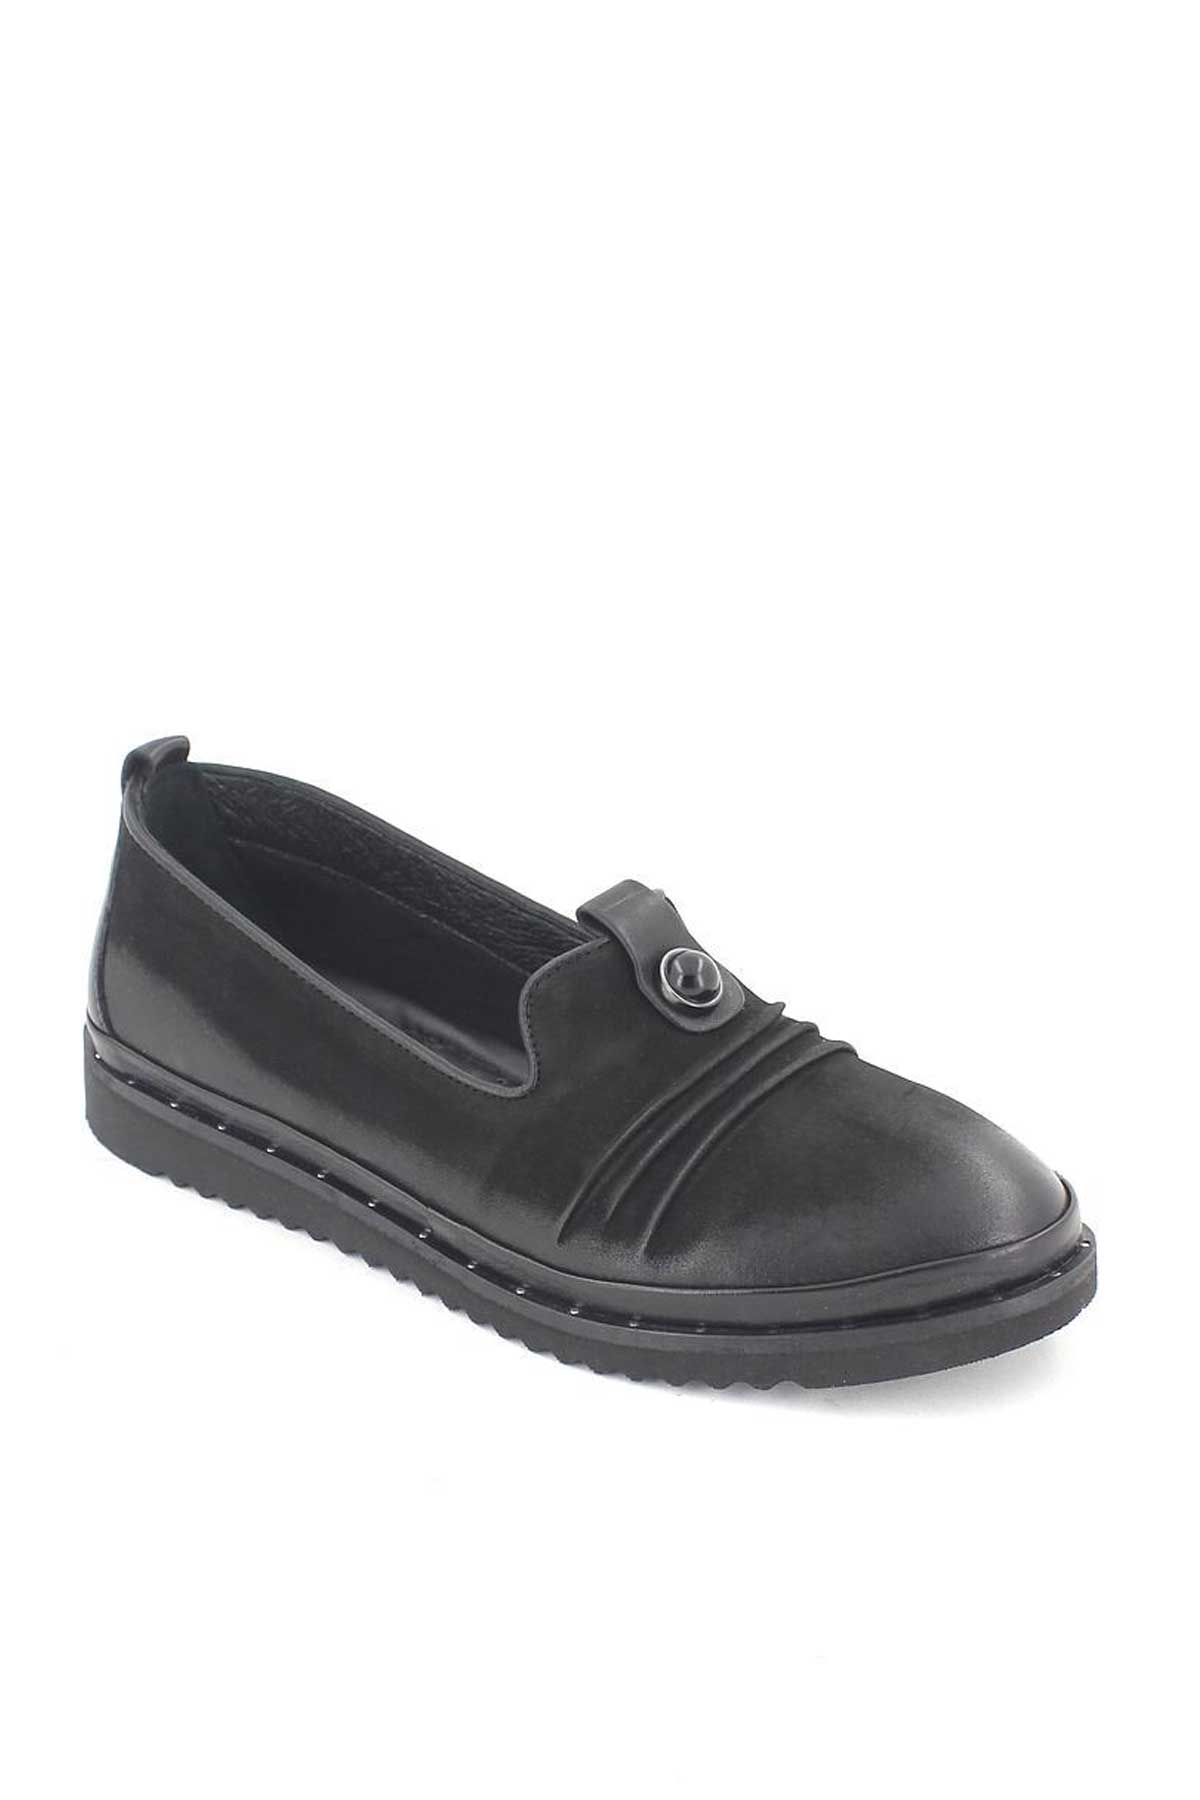 Kadın Deri Comfort Ayakkabı Siyah 1810021K - Thumbnail